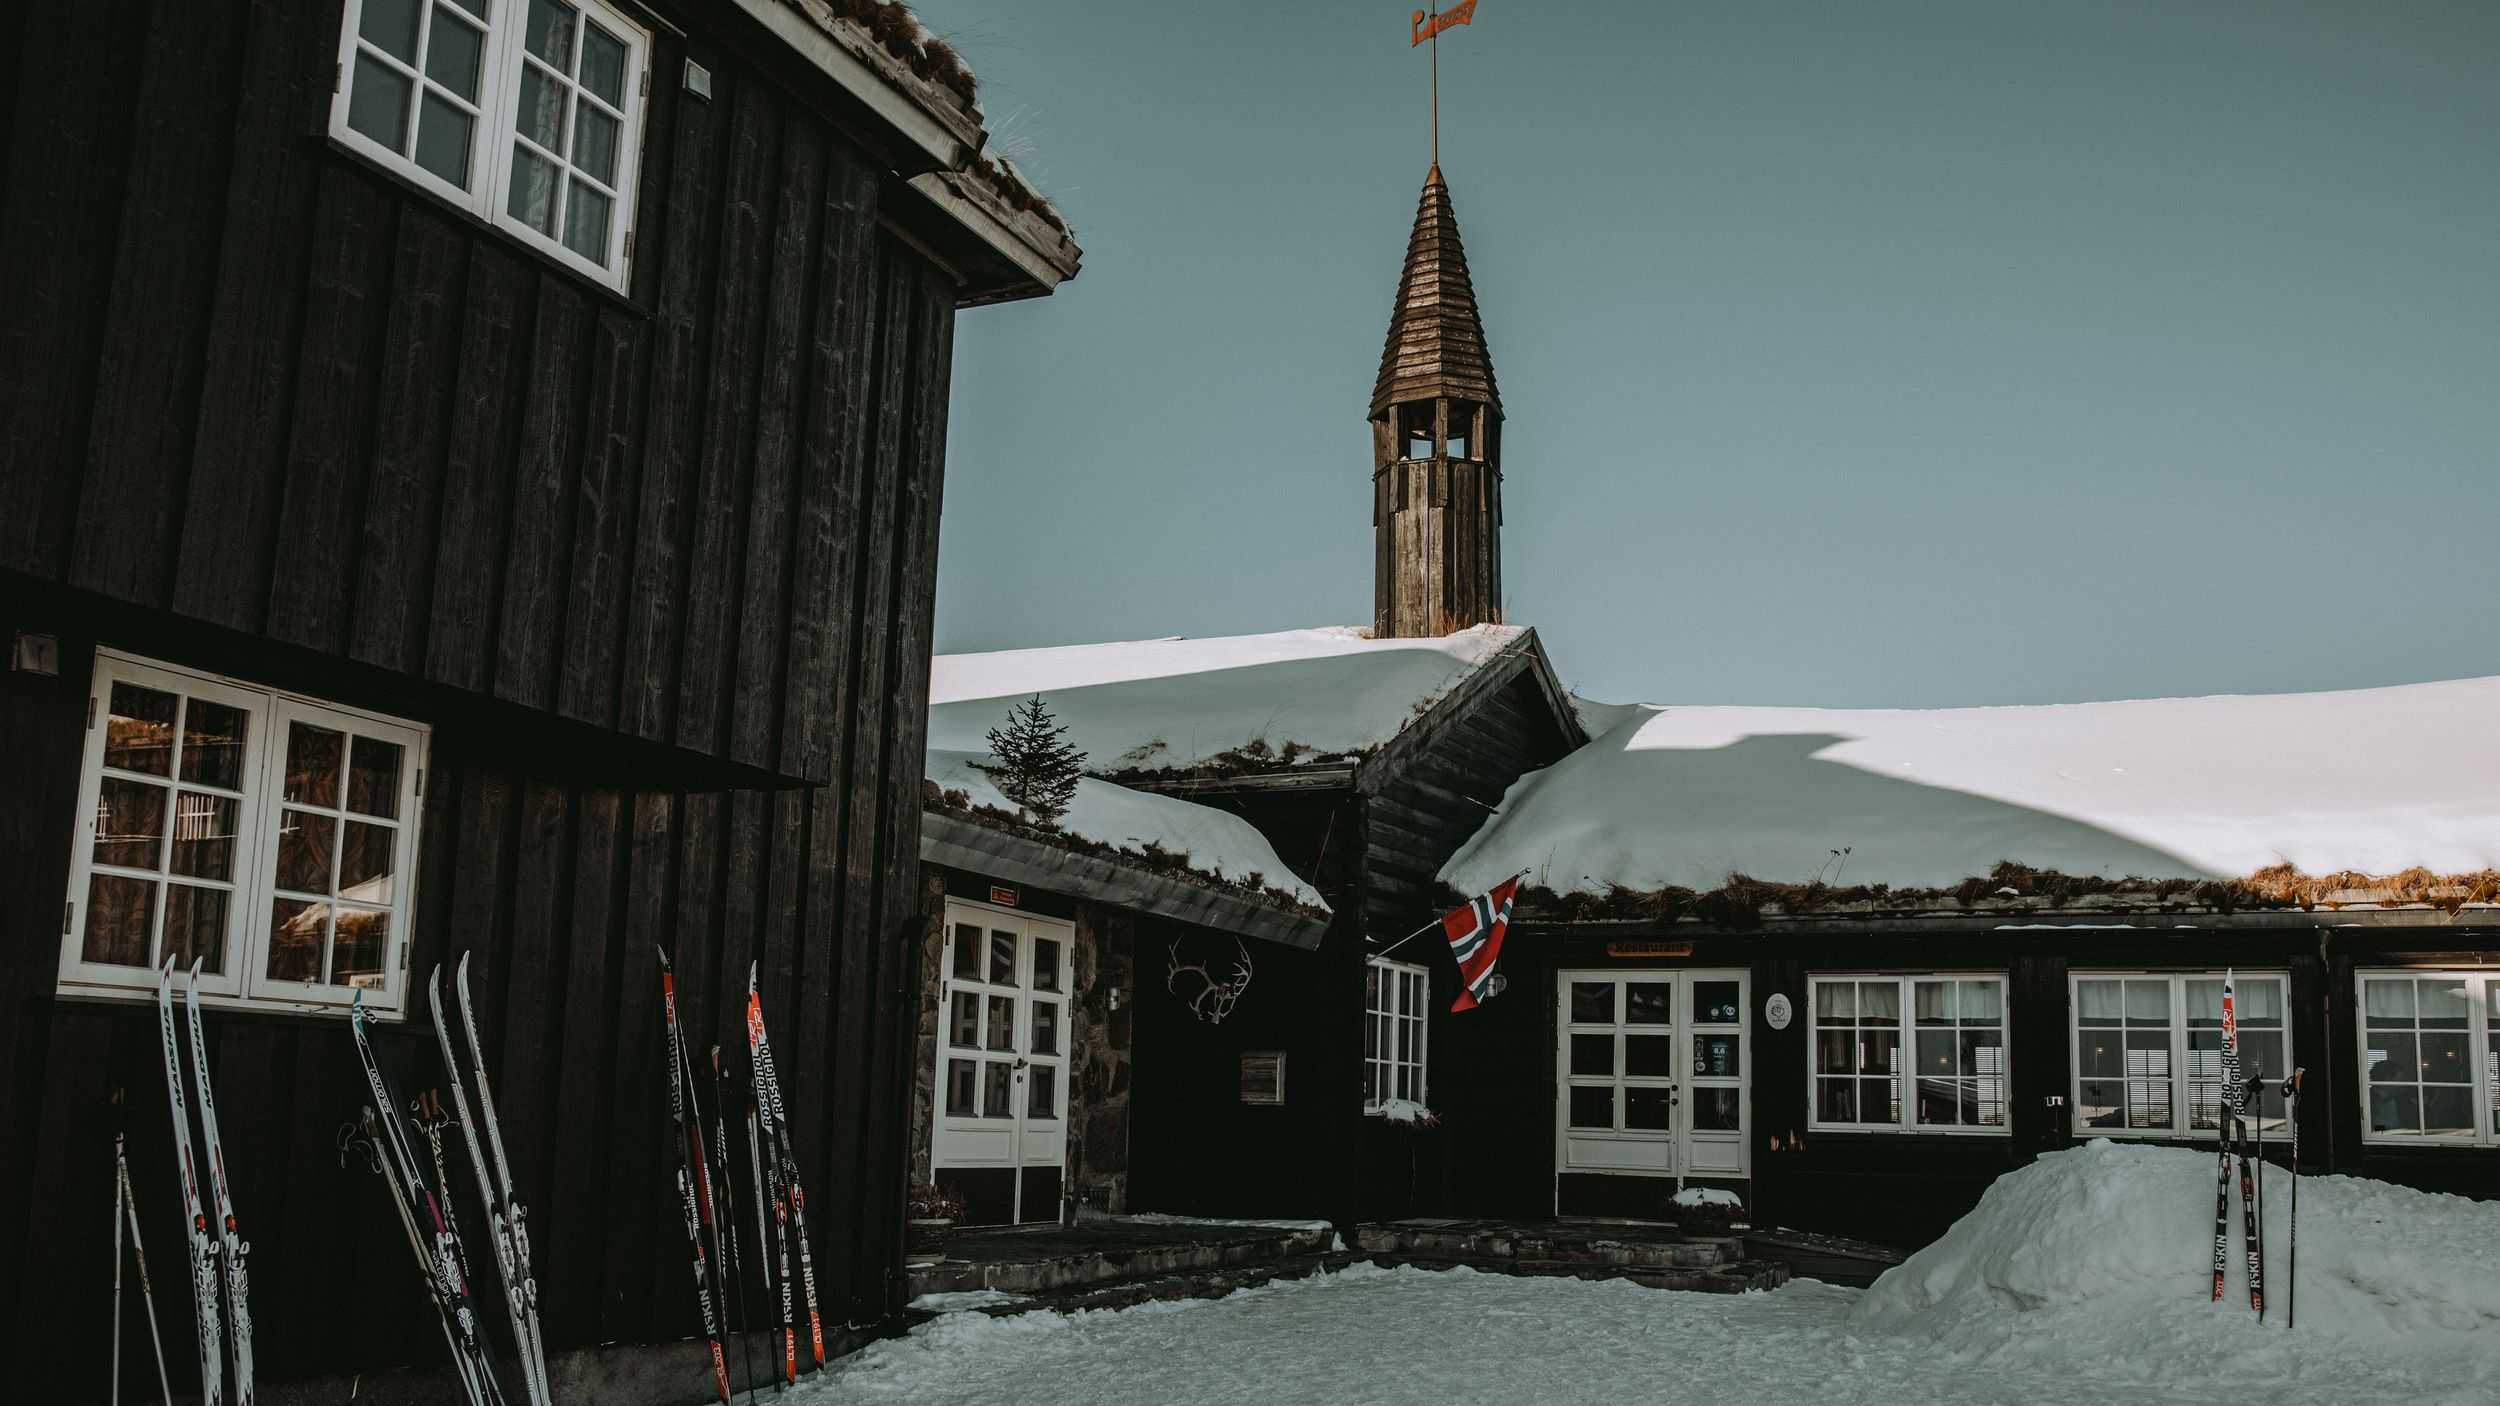 Skis outside Danebu Kongsgaard.